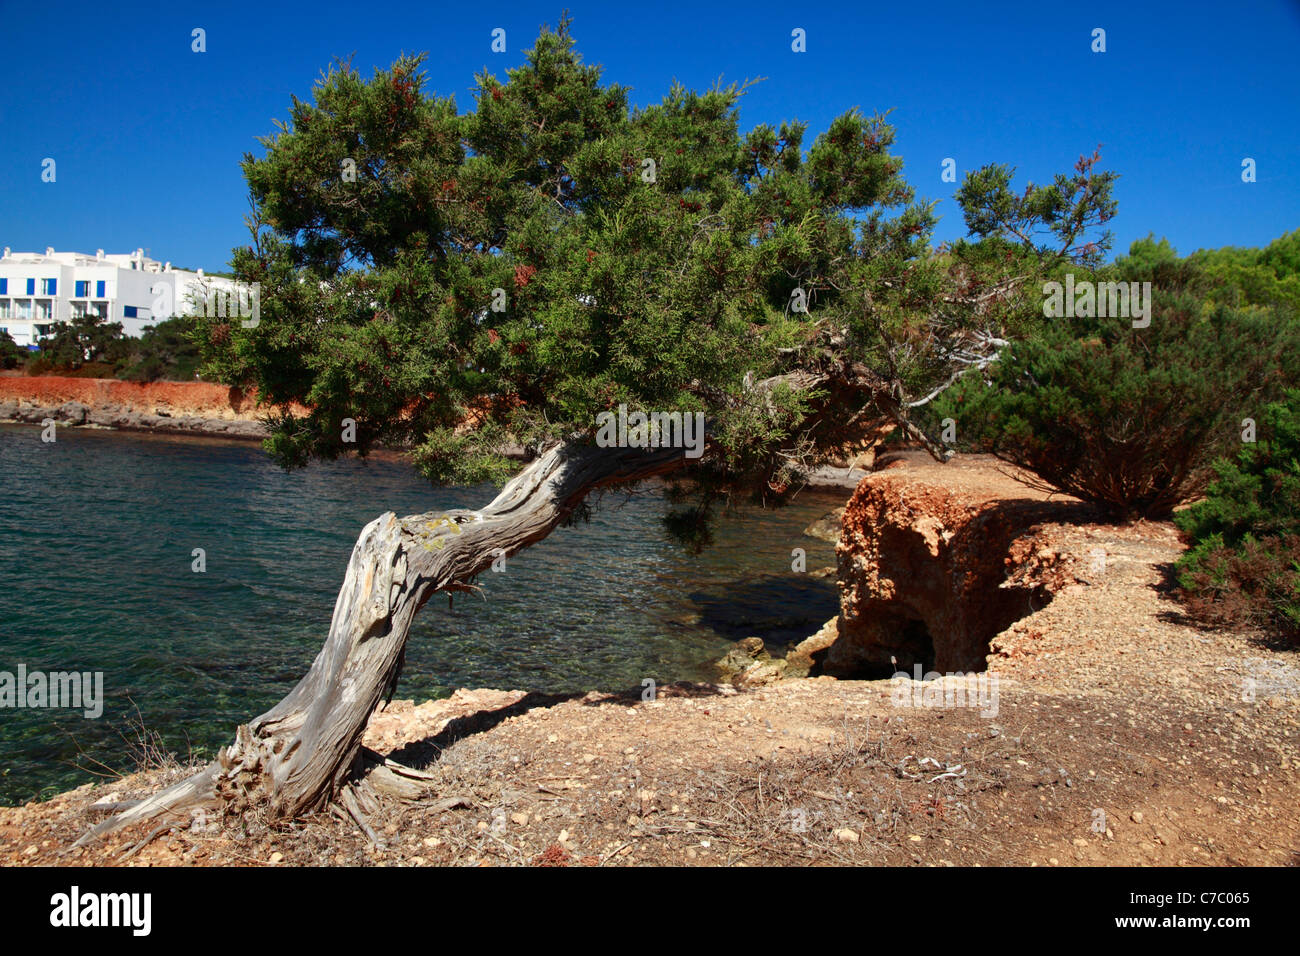 Twisted juniper (juniperus communis), Ibiza, Spain Stock Photo